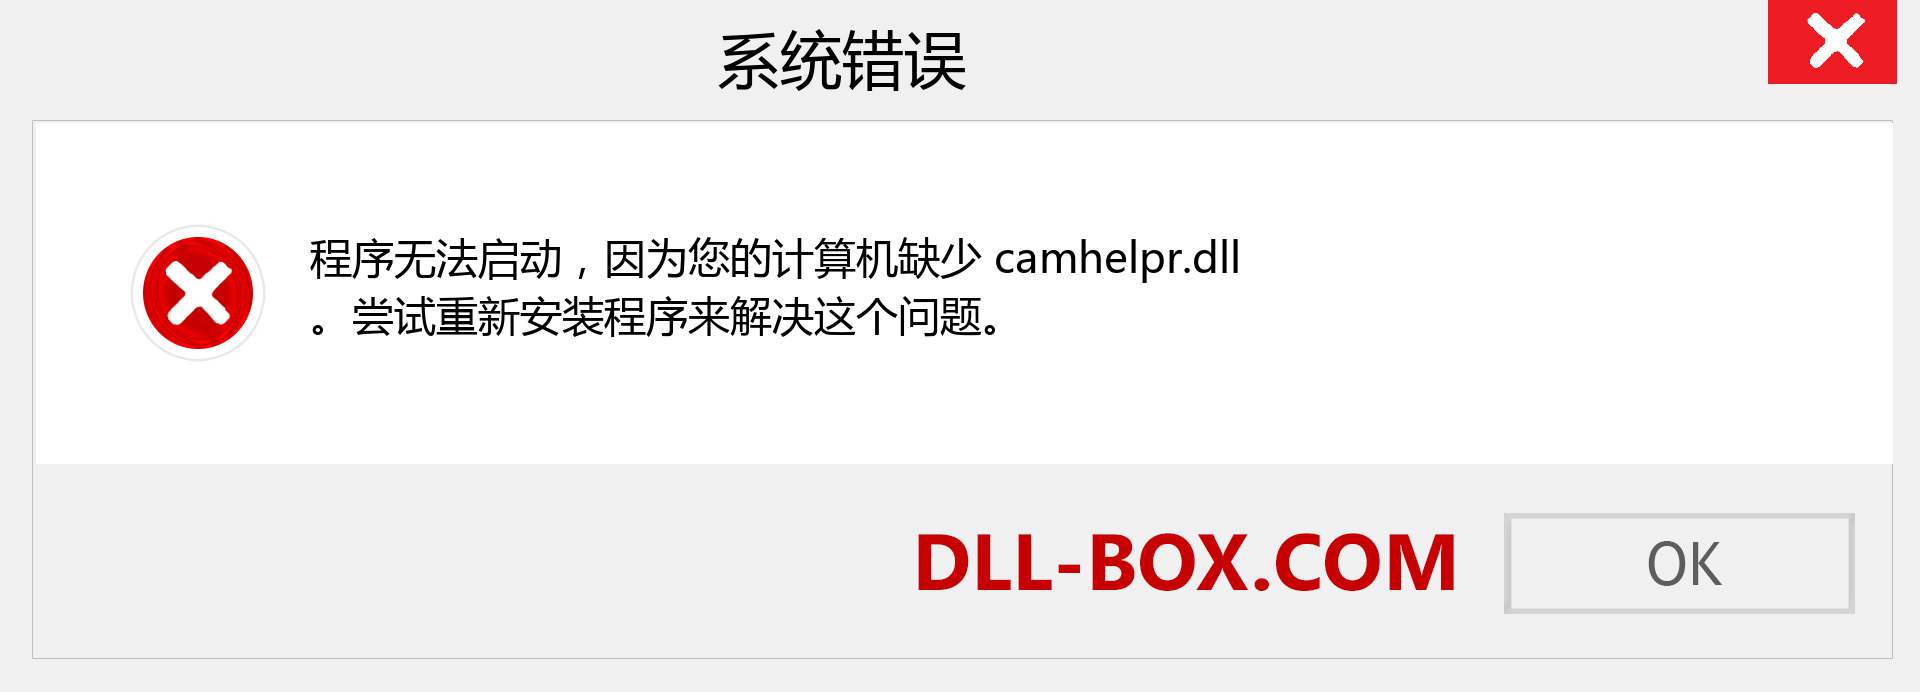 camhelpr.dll 文件丢失？。 适用于 Windows 7、8、10 的下载 - 修复 Windows、照片、图像上的 camhelpr dll 丢失错误